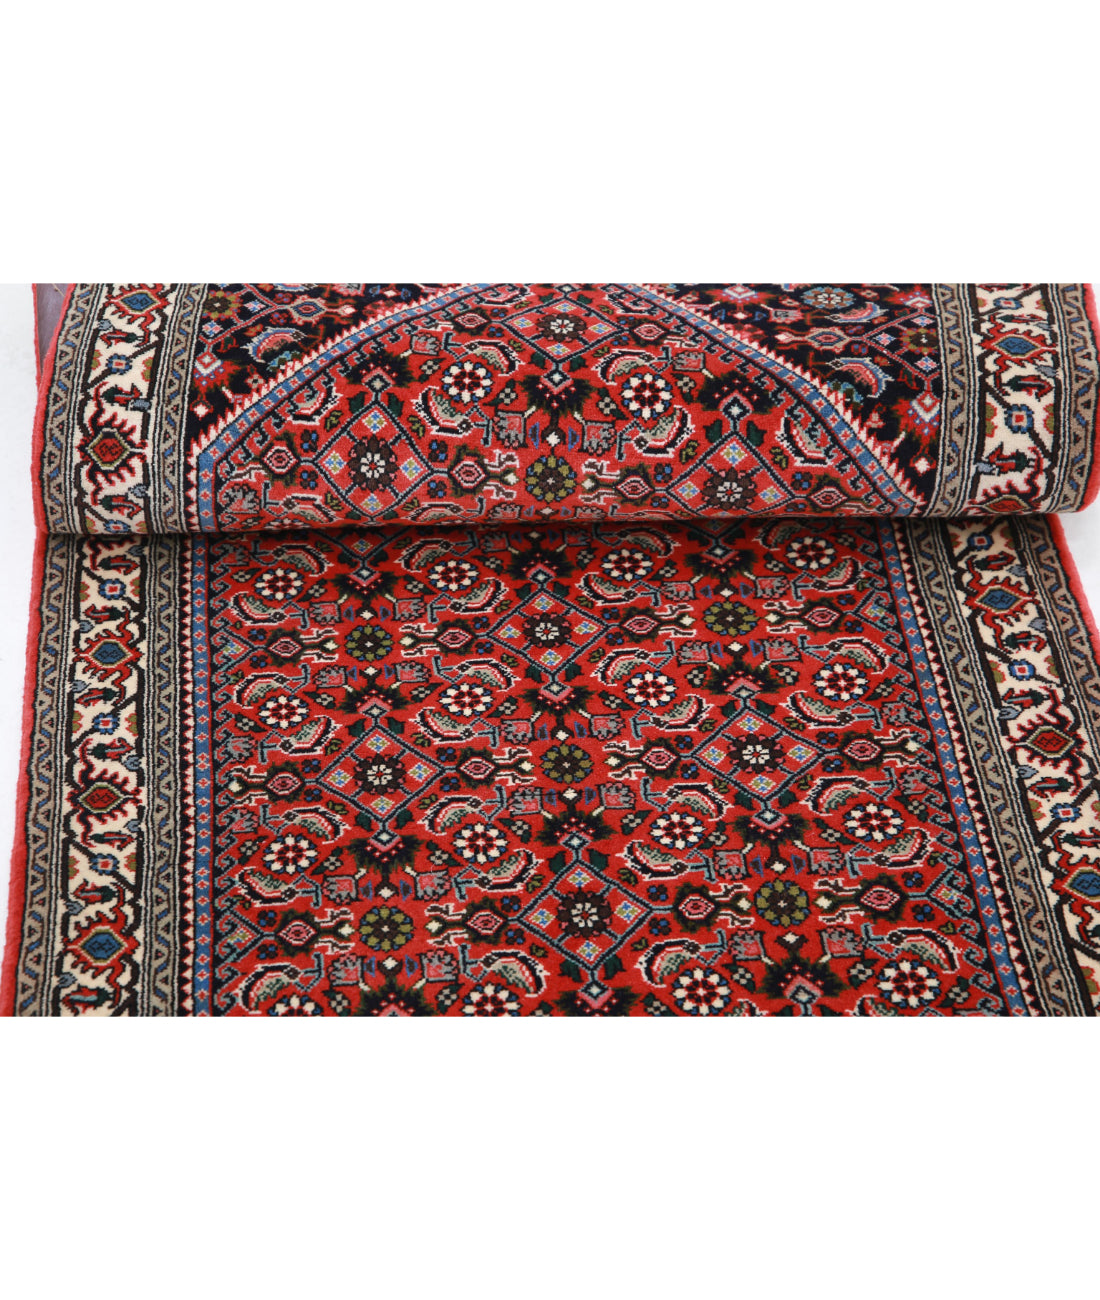 Hand Knotted Persian Bijar Wool Rug - 2'6'' x 9'5'' 2'6'' x 9'5'' (75 X 283) / Rust / Ivory